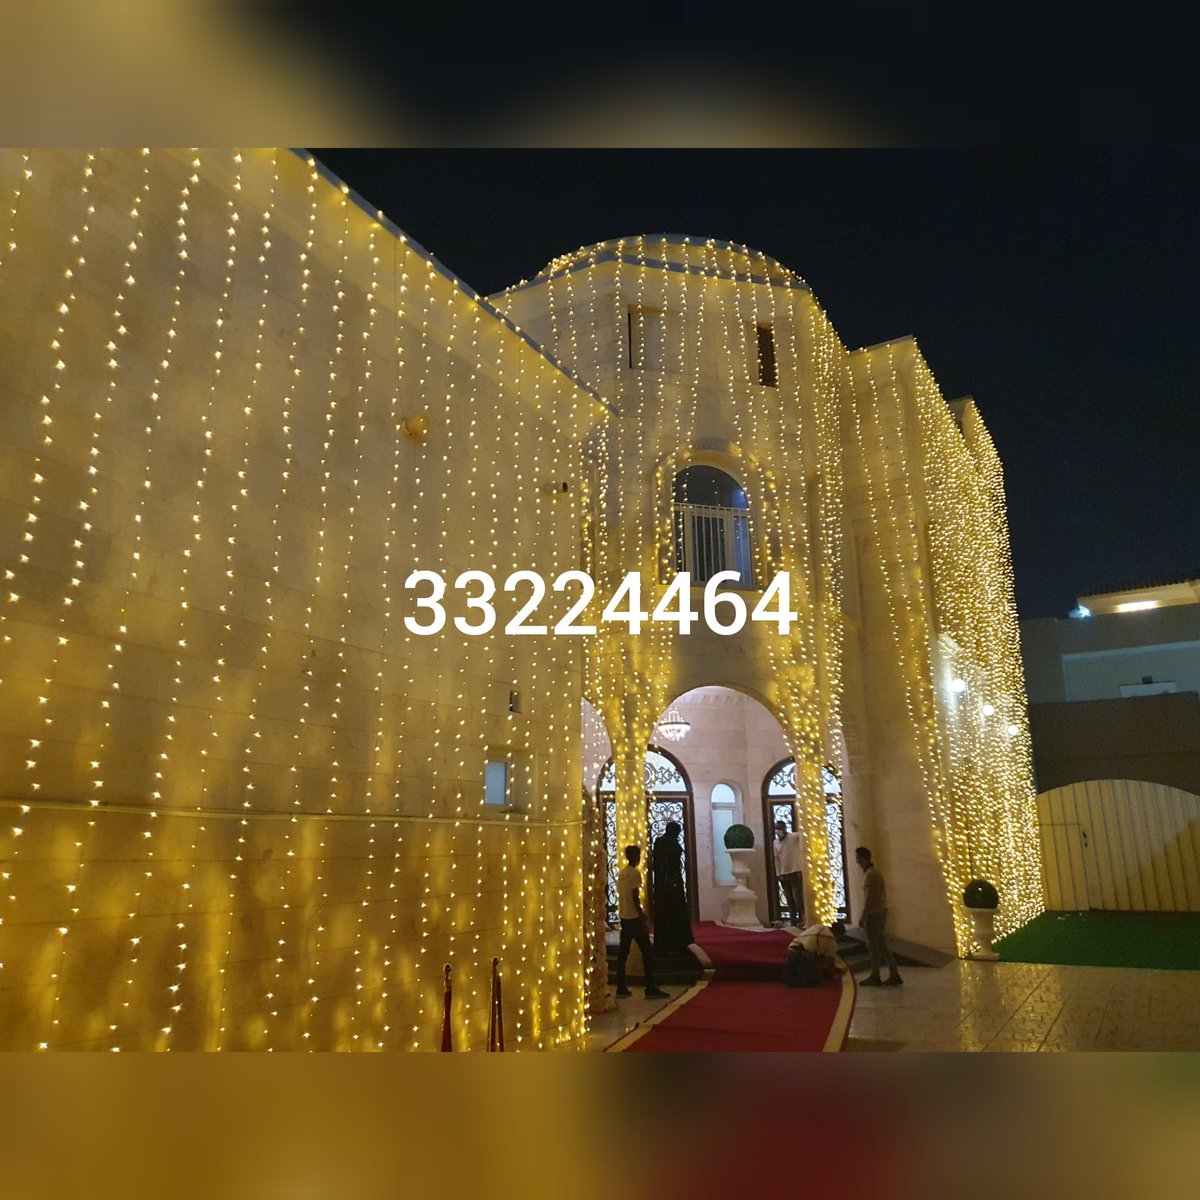 Qatat Doha Wedding Lighting & Events
#qatar #doha #laitat_qatar #qatarinstagram #qatarwedding #qatarevents #alwakra #dafna #alkhor #rayyan #ummsalal #paty #king  #qatarlife #qatarliving  #qatargp #qatarworldcup2022  #qatarday #qatartourism #qatargirls #qatar_laitat #laitatqatar